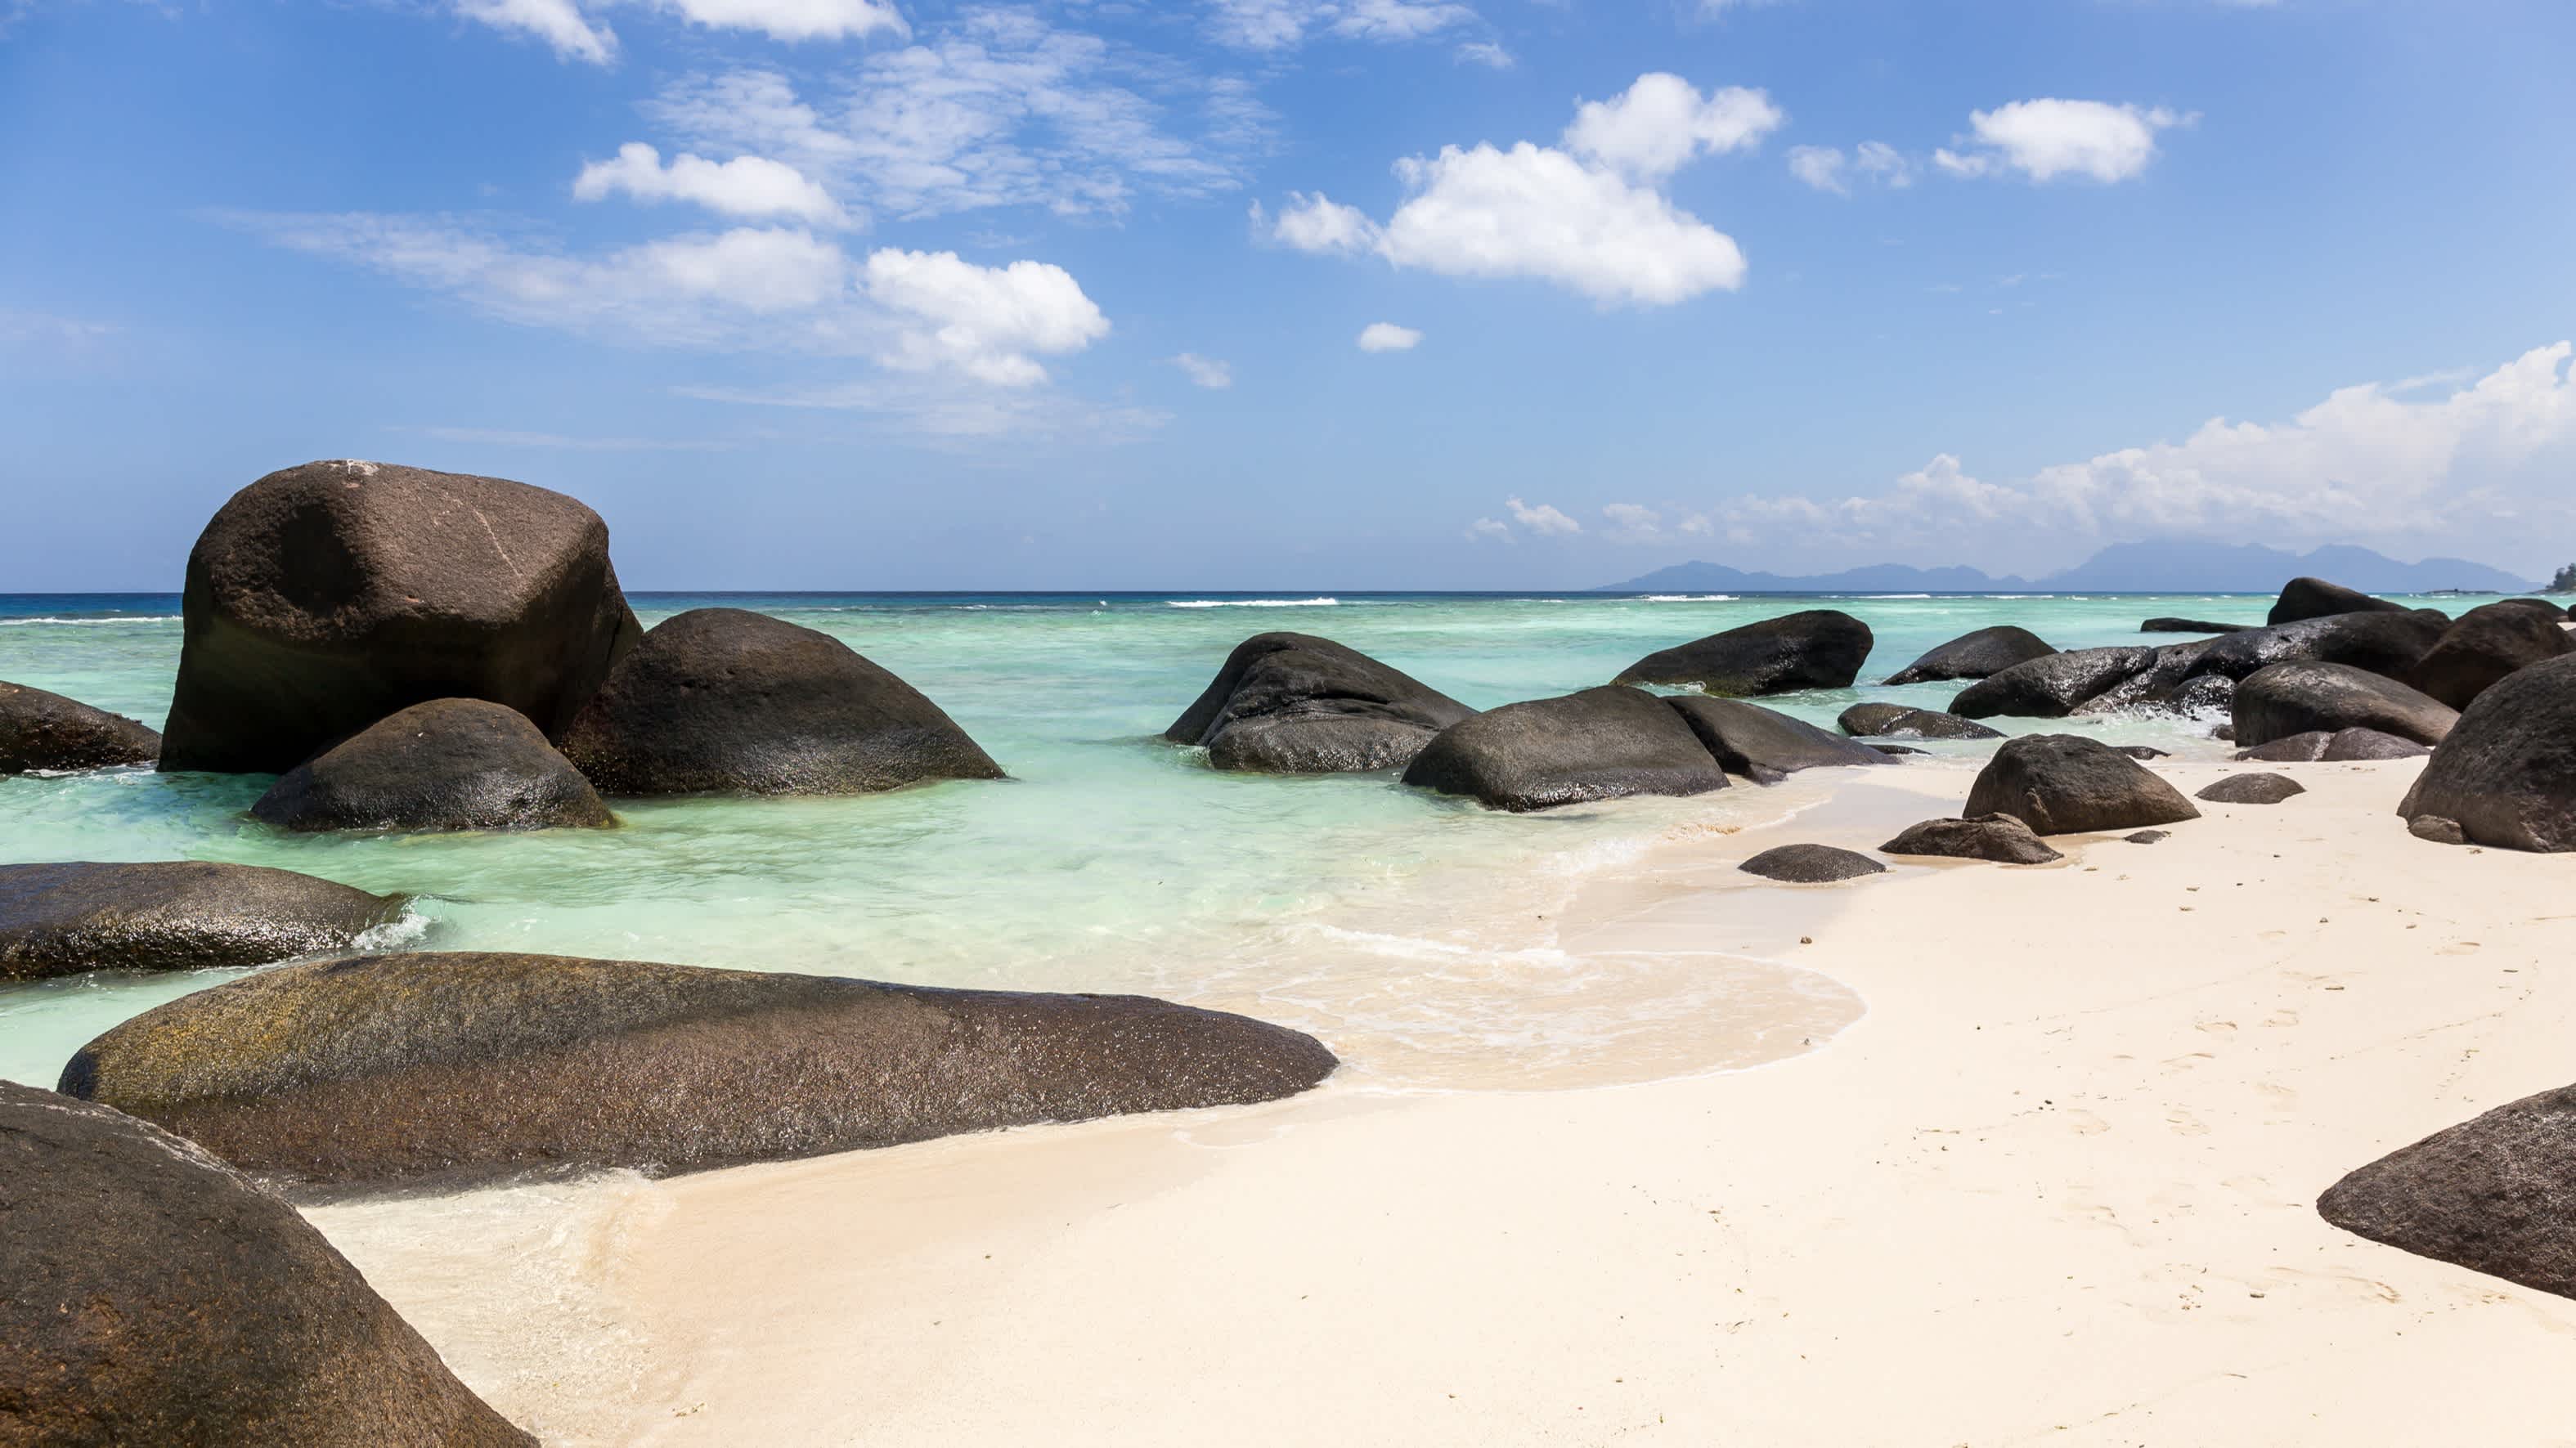 Schöner Strand Anse La Passe und türkisfarbenes Meer auf der Insel Silhouette, Seychellen bei Sonne pur und mit tollen Granitfelsen im Bild. 

